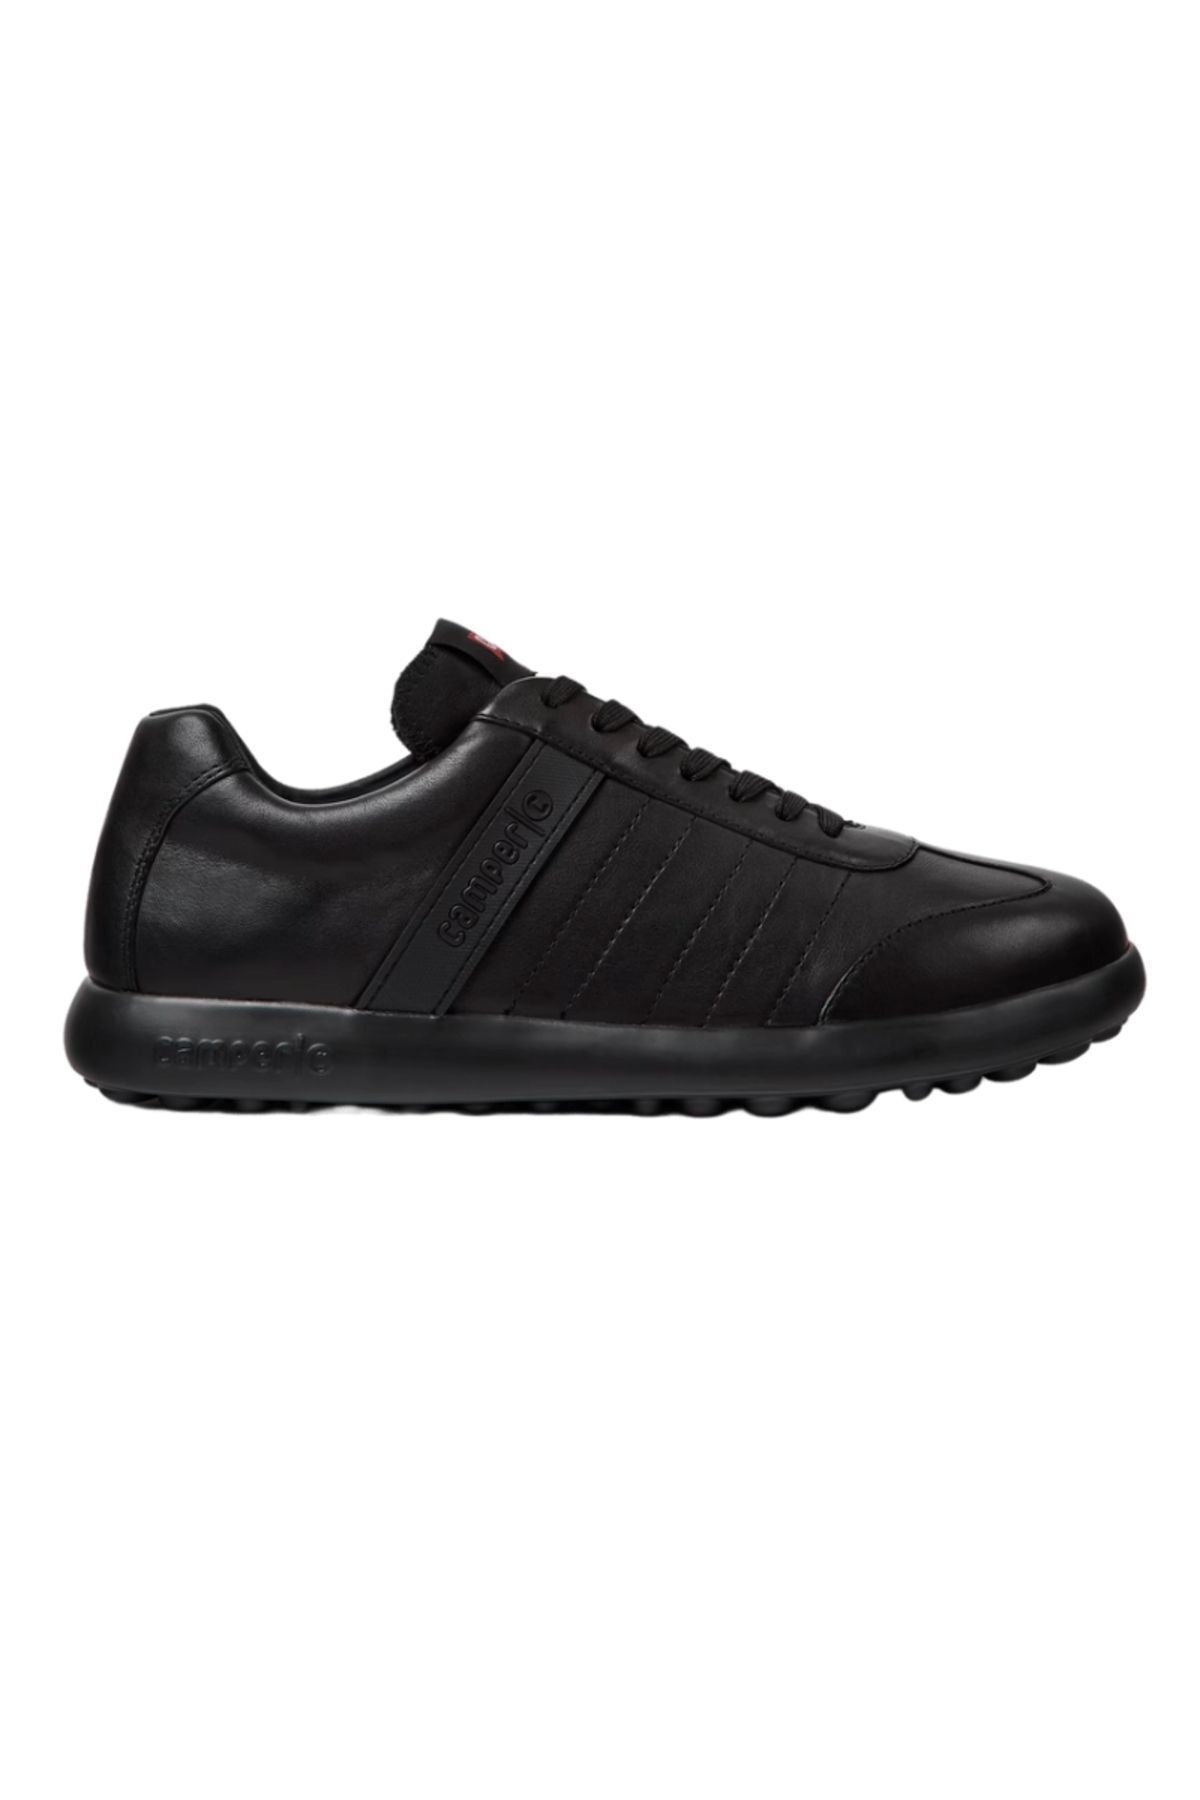 CAMPER Erkek Siyah Casual Ayakkabı K100752-001-siyah